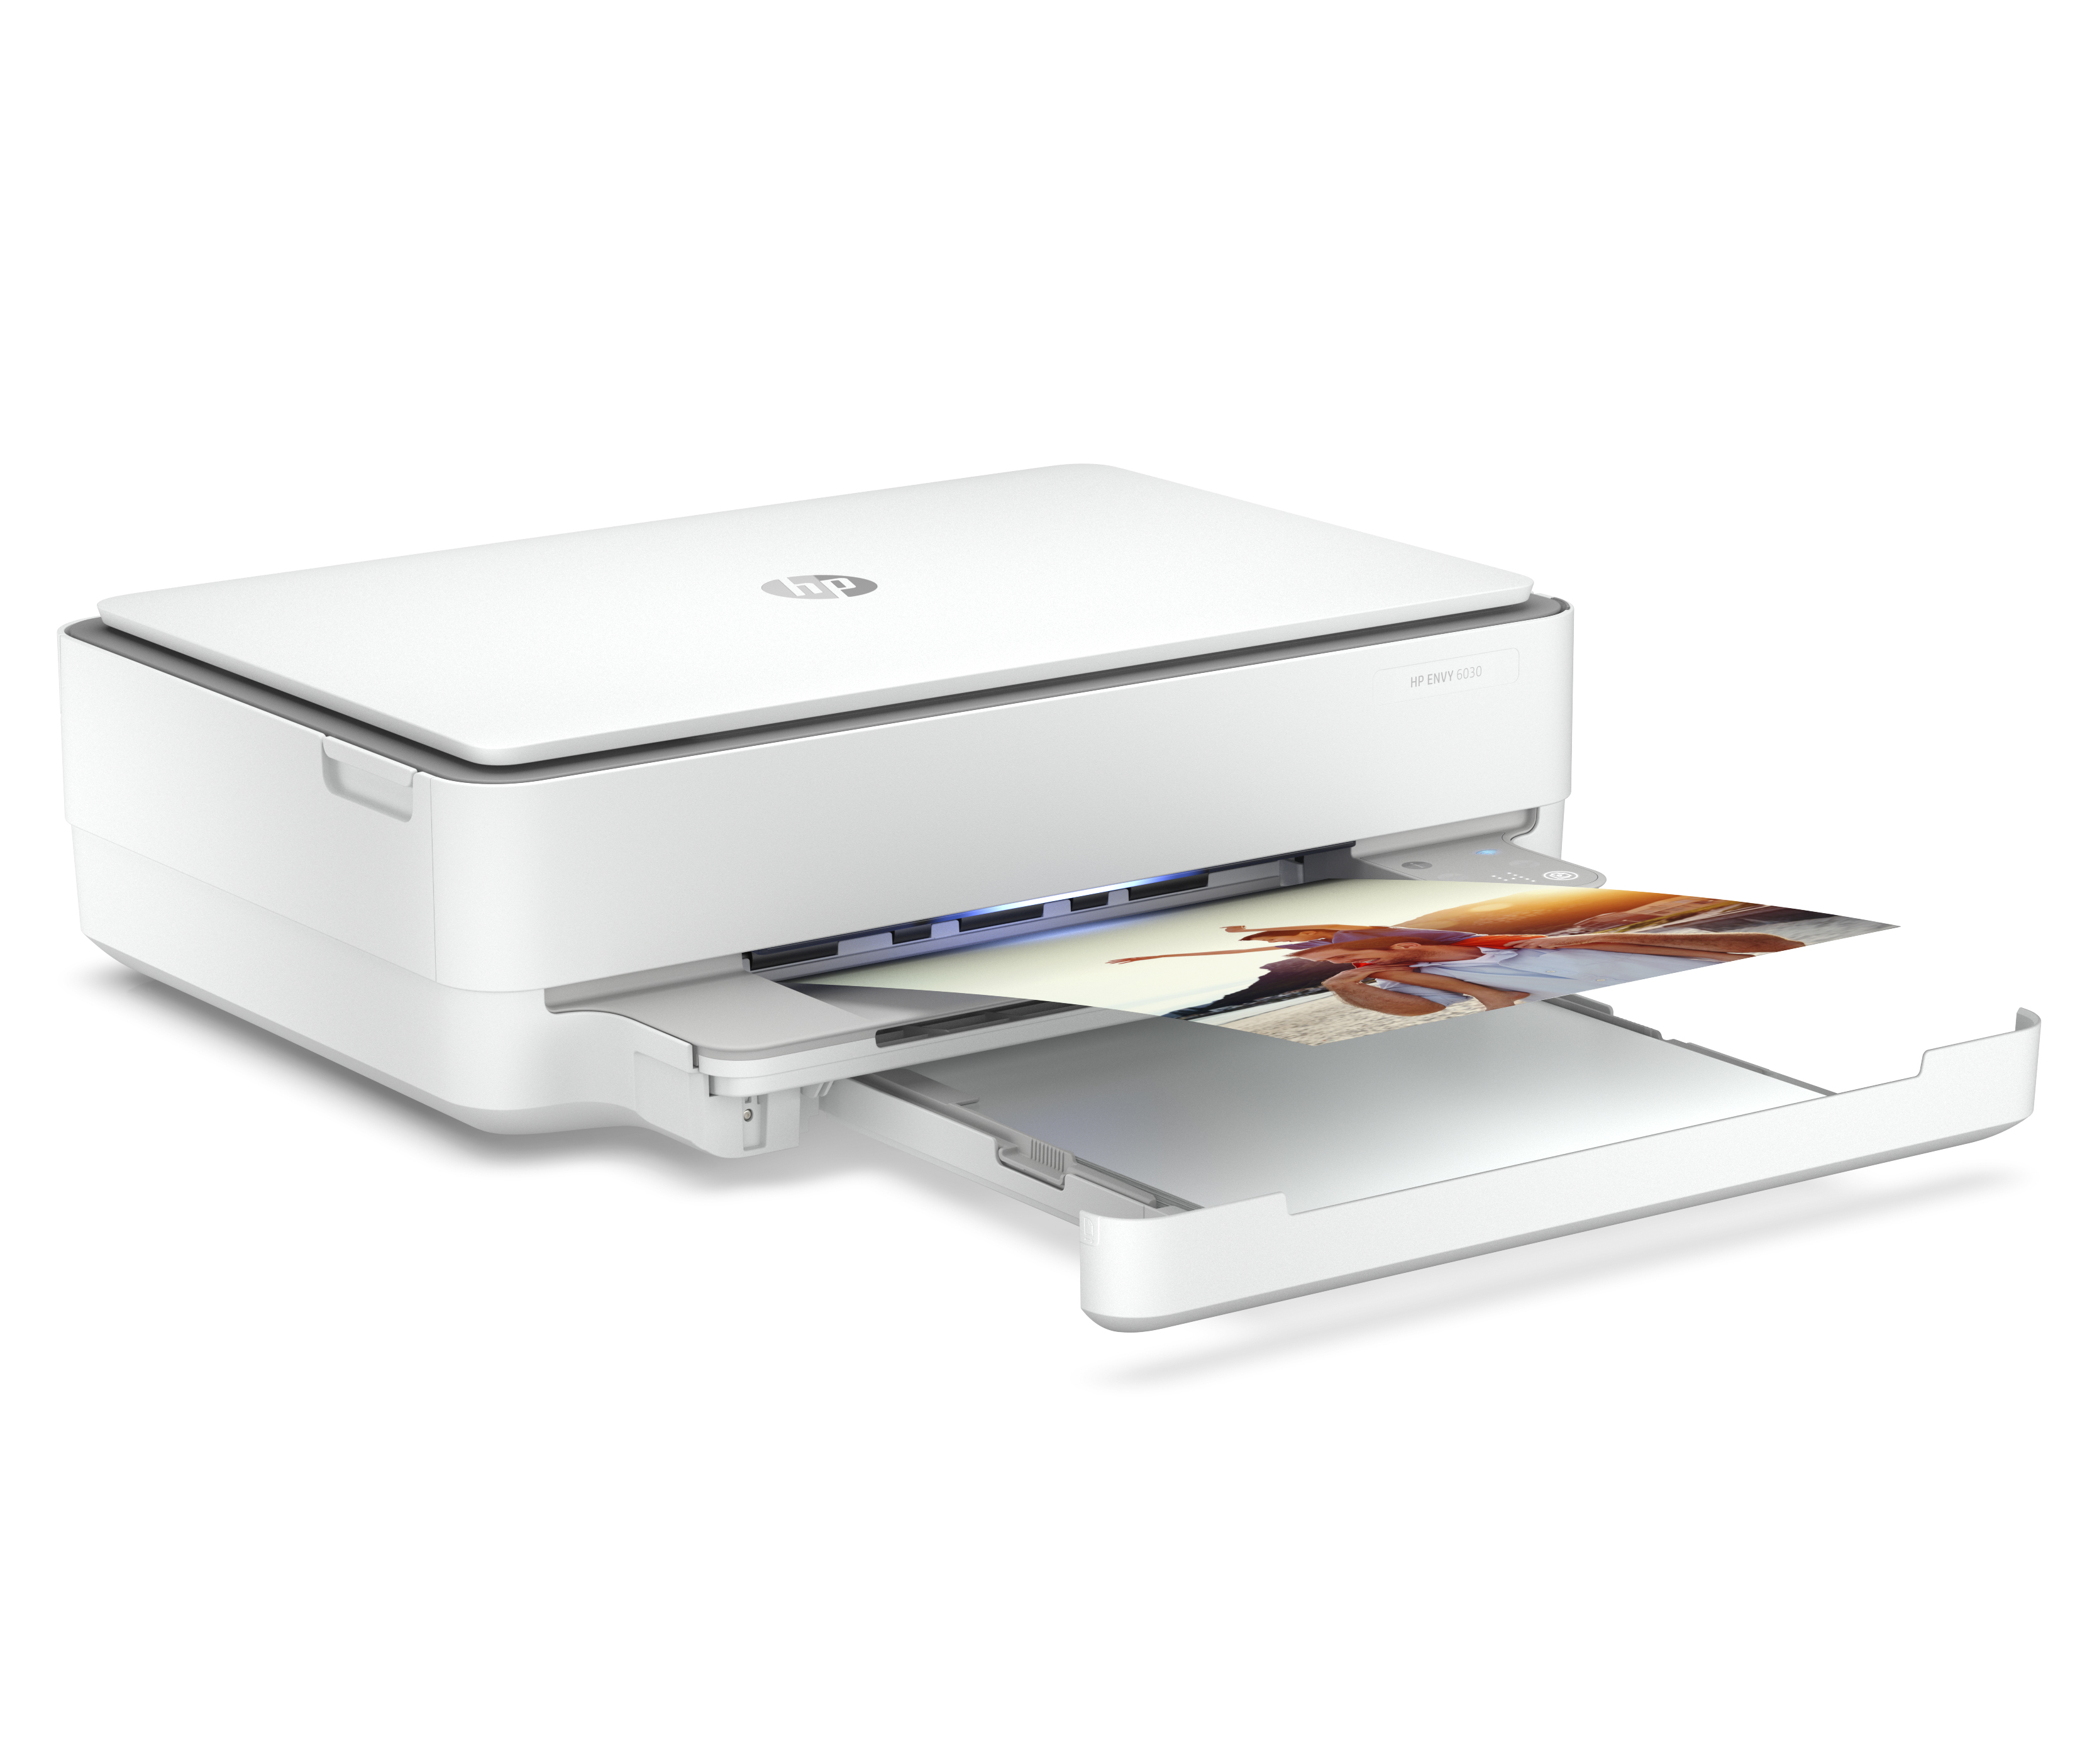 HP Envy 5020 Imprimante Multifonction jet d'encre couleur (10 ppm, 4800 x  1200 ppp, USB, Wifi, Instant Ink)